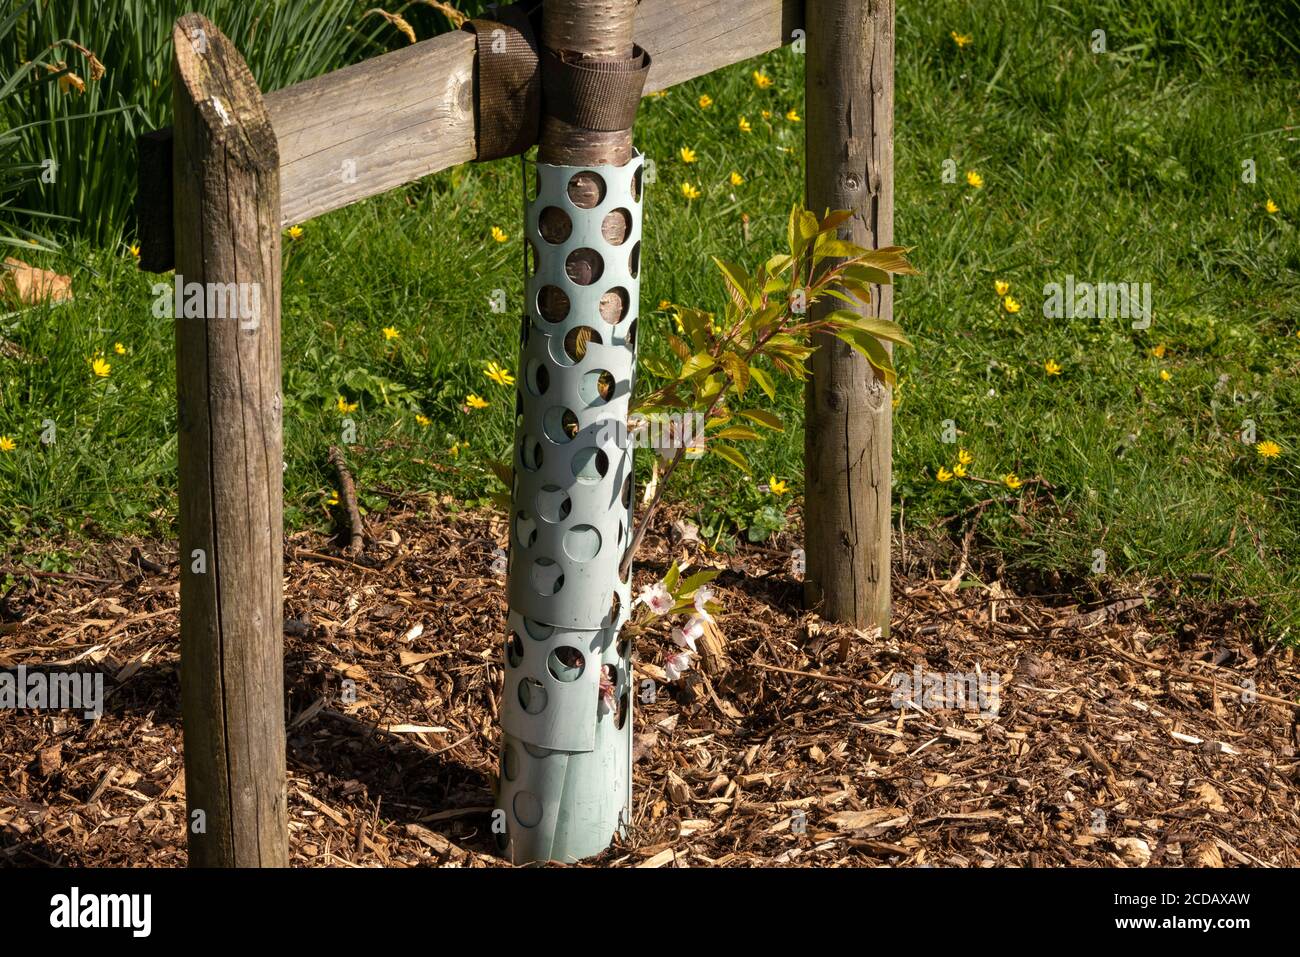 Les jeunes pousses ou feuilles de cerisier poussent au printemps Tube de protection à mailles métalliques boisement Irlande Banque D'Images